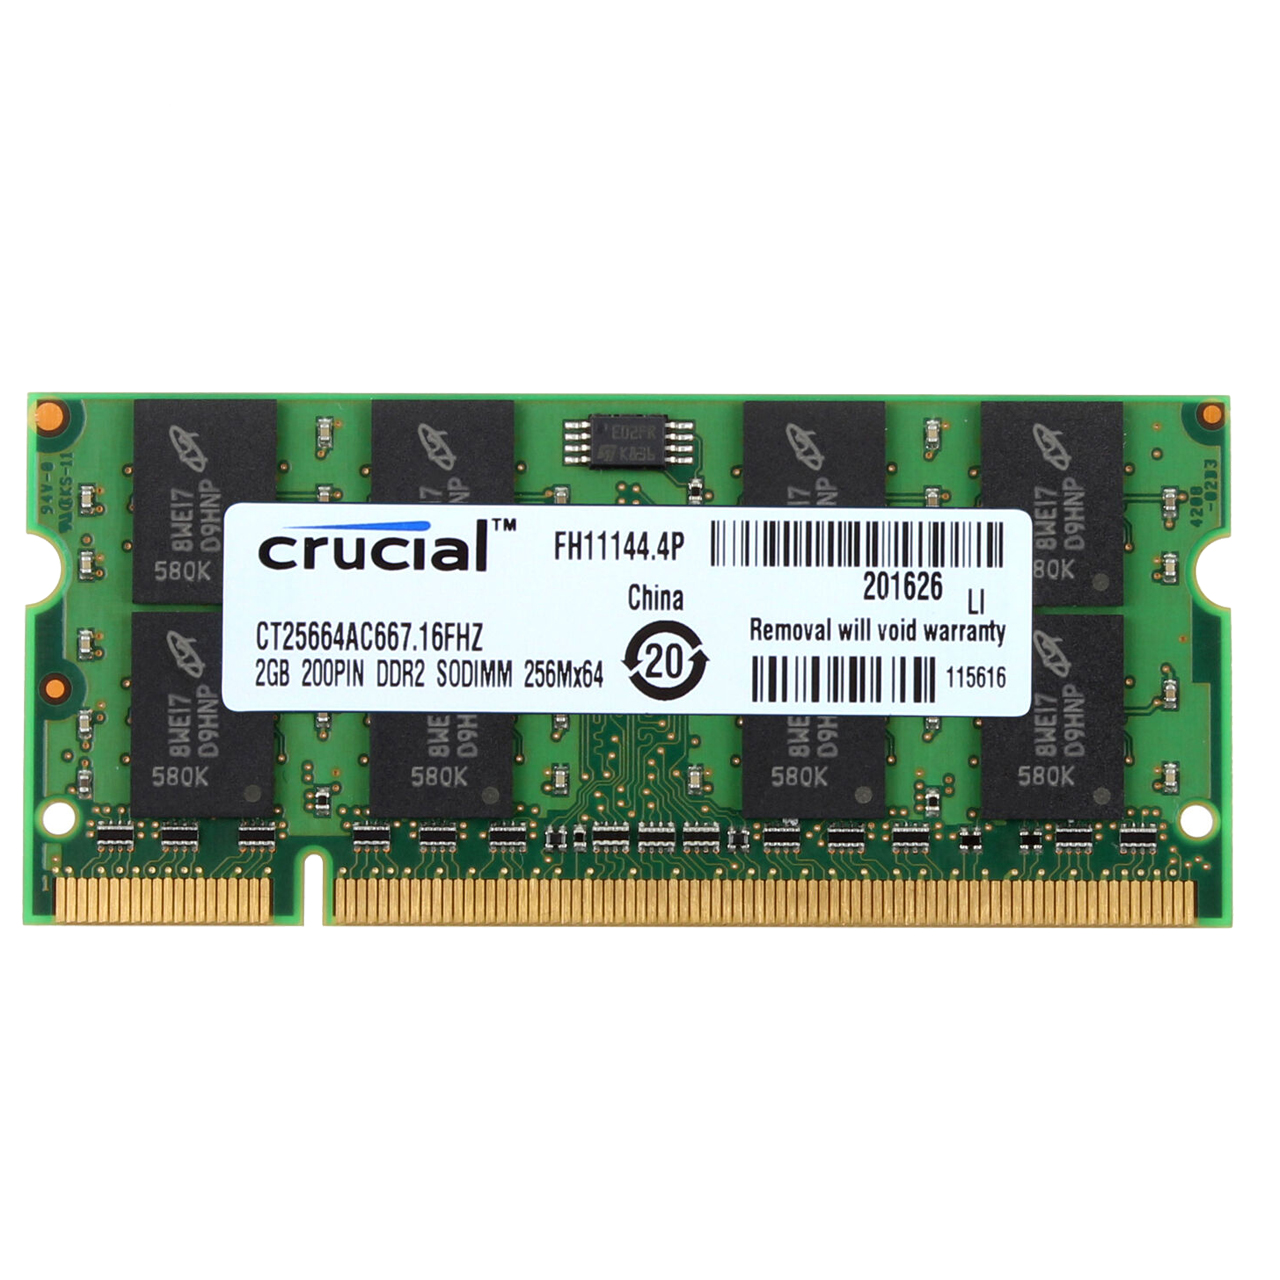 رم لپ تاپ DDR3 تک کاناله 1066 مگاهرتز کروشیال CL9 مدل FH11144 ظرفیت 2 گیگابایت